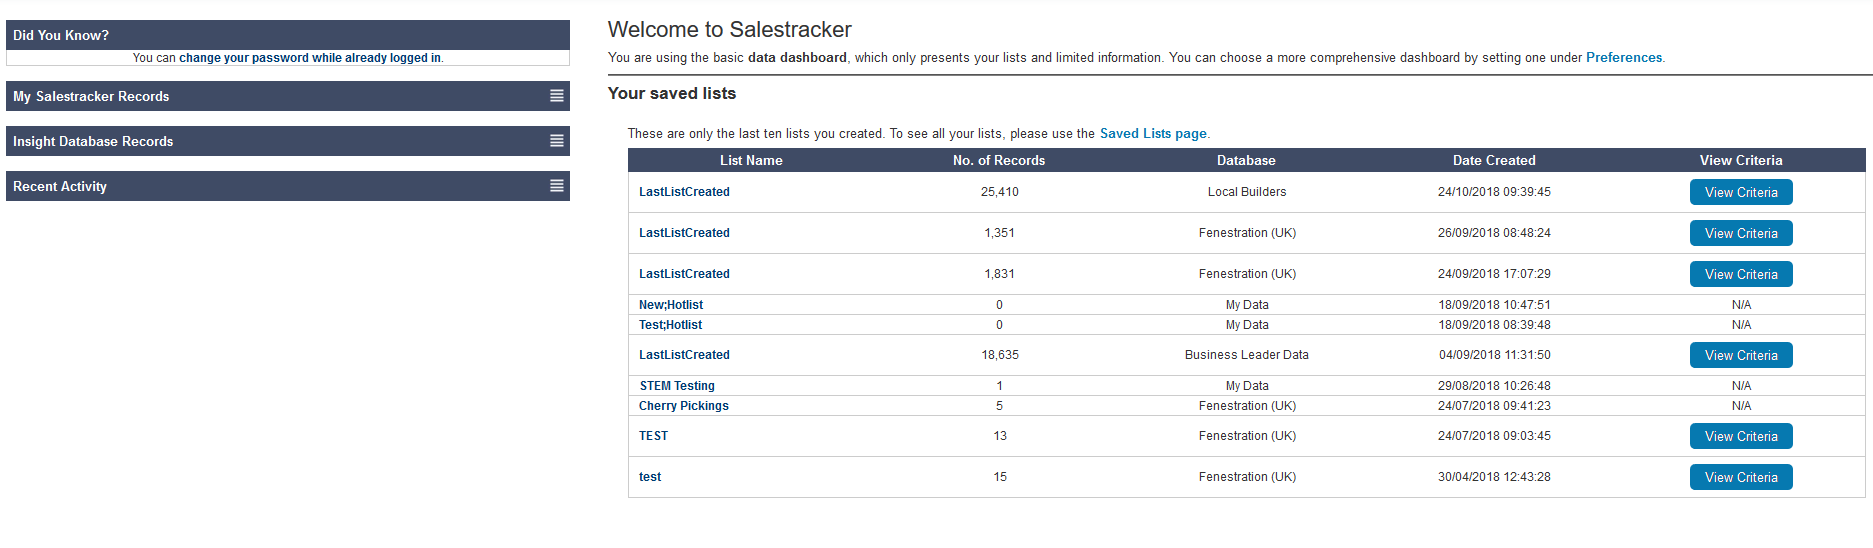 Salestracker - Data Dashboard